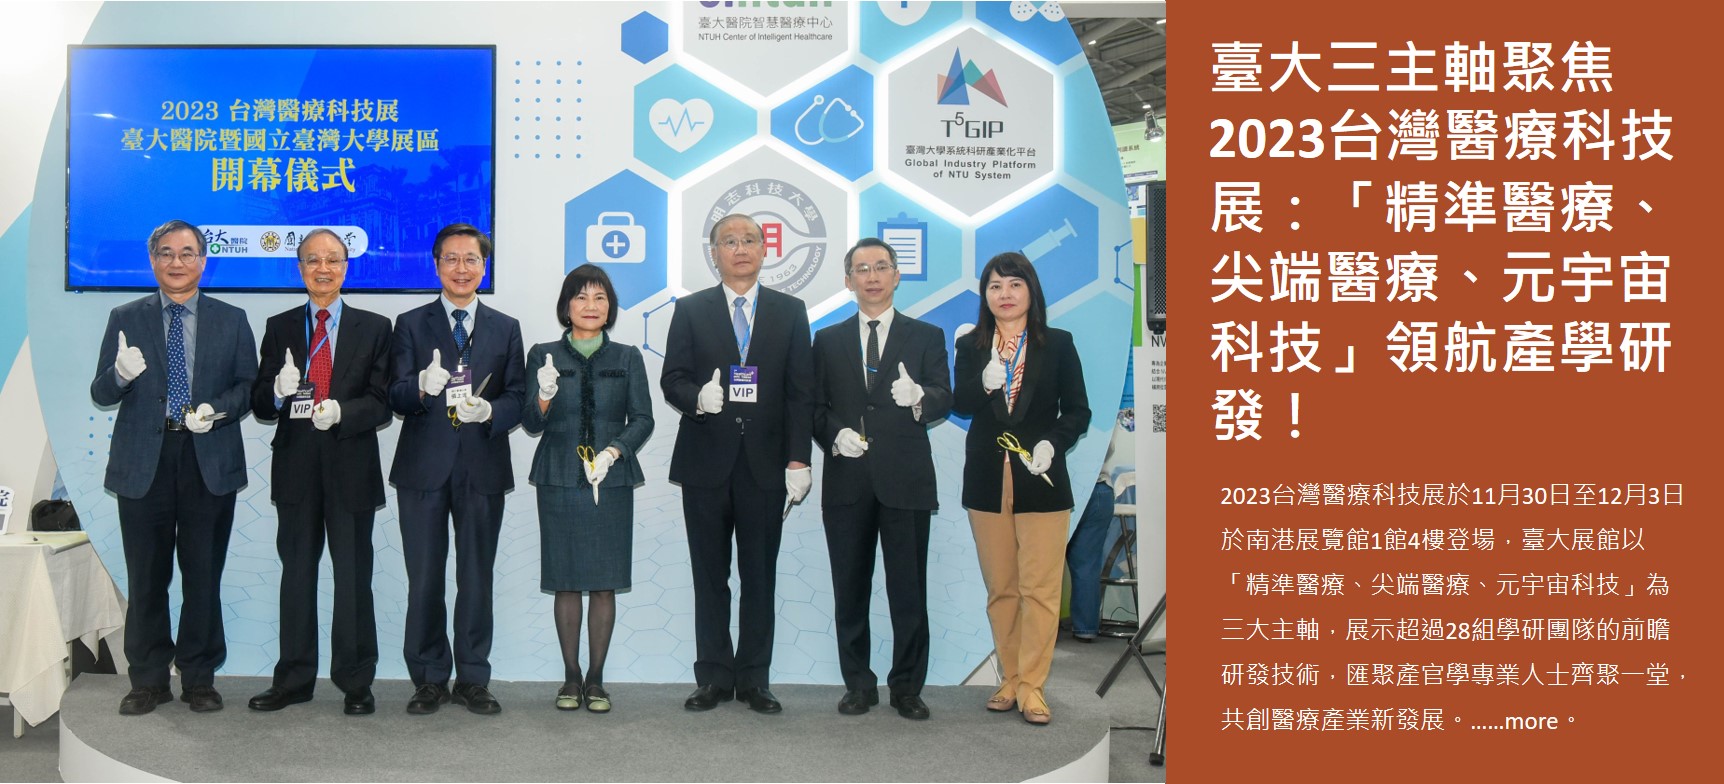 臺大三主軸聚焦2023台灣醫療科技展：「精準醫療、尖端醫療、元宇宙科技」領航產學研發！